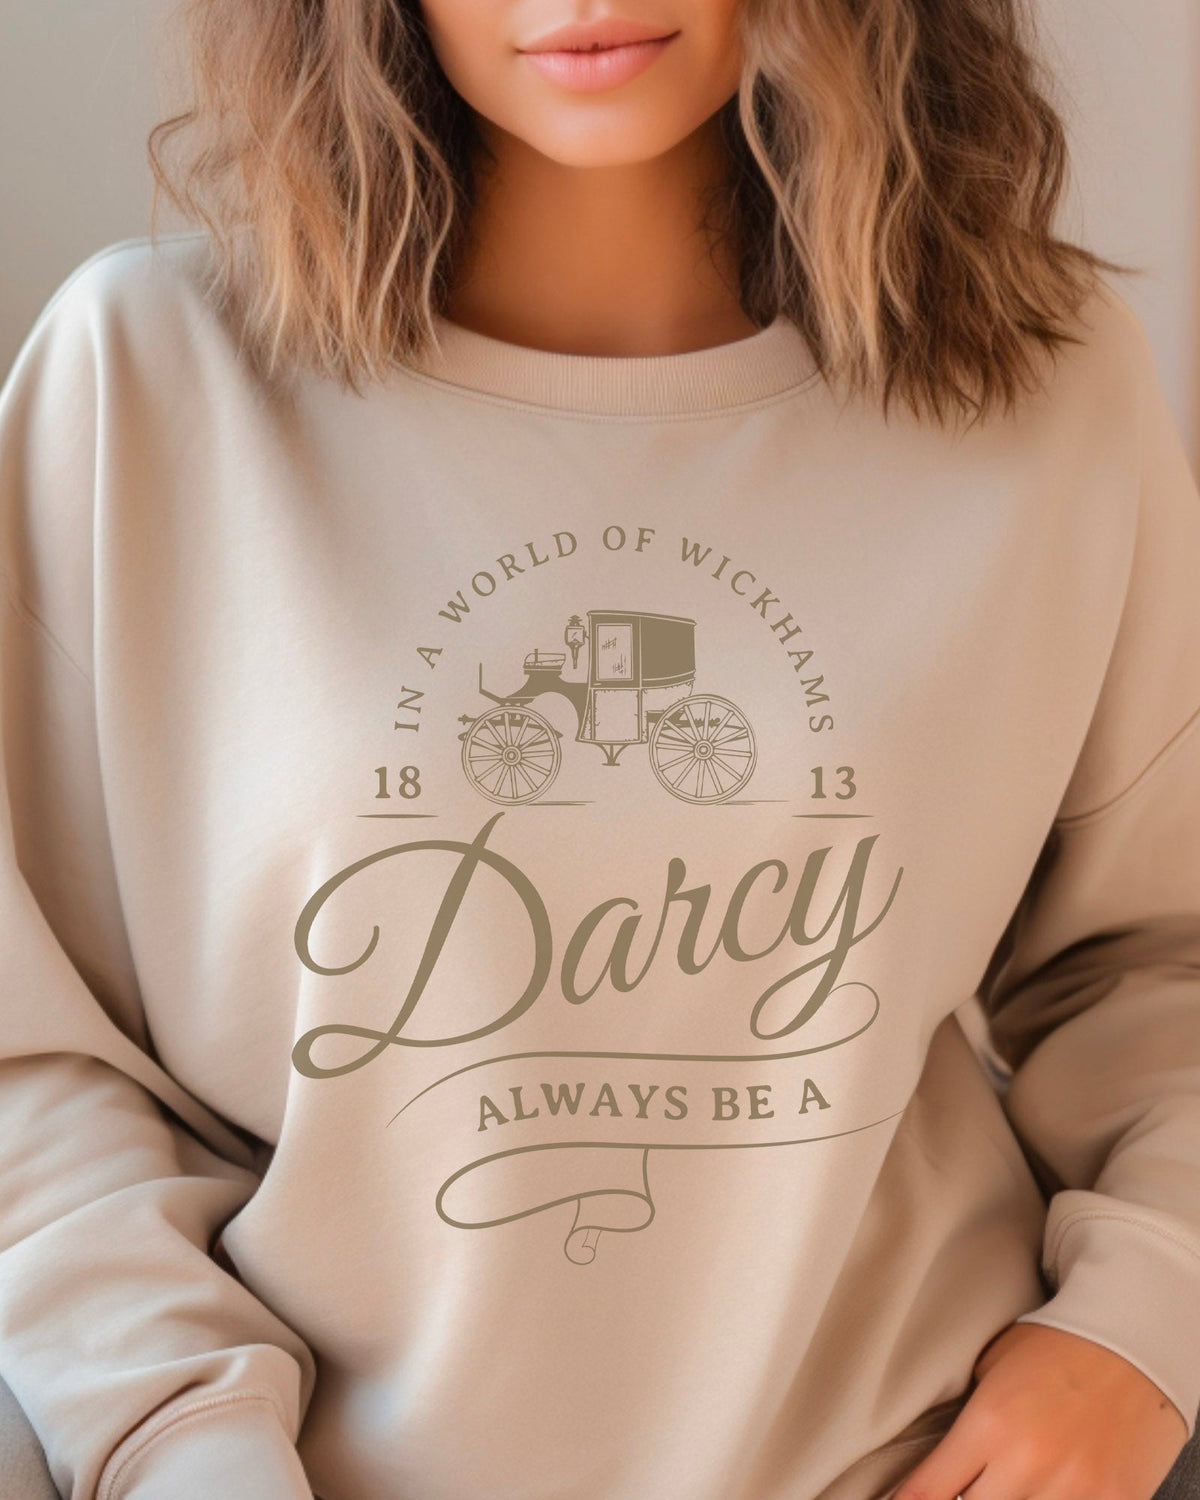 Mr. Darcy Sweatshirt *BEST SELLER*